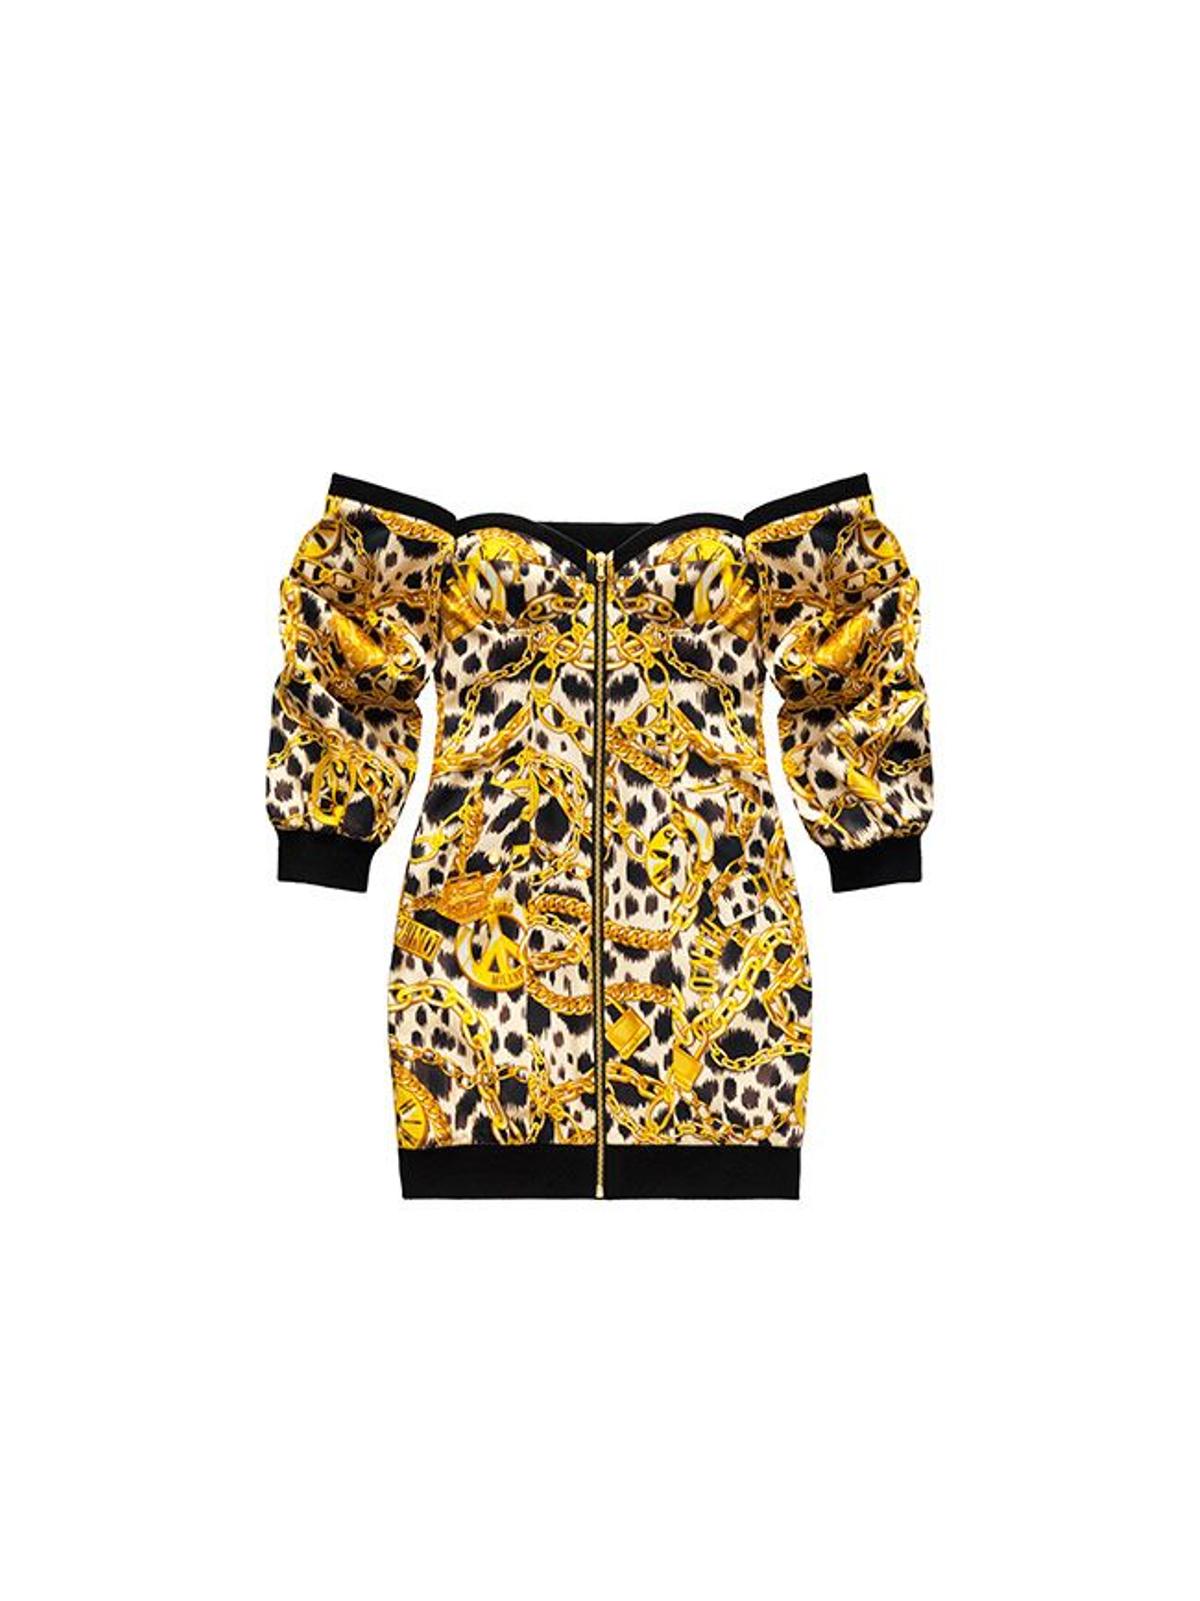 Todas las imágenes de la colección de Moschino x H&amp;M: vestido estampado leopardo y cadenas